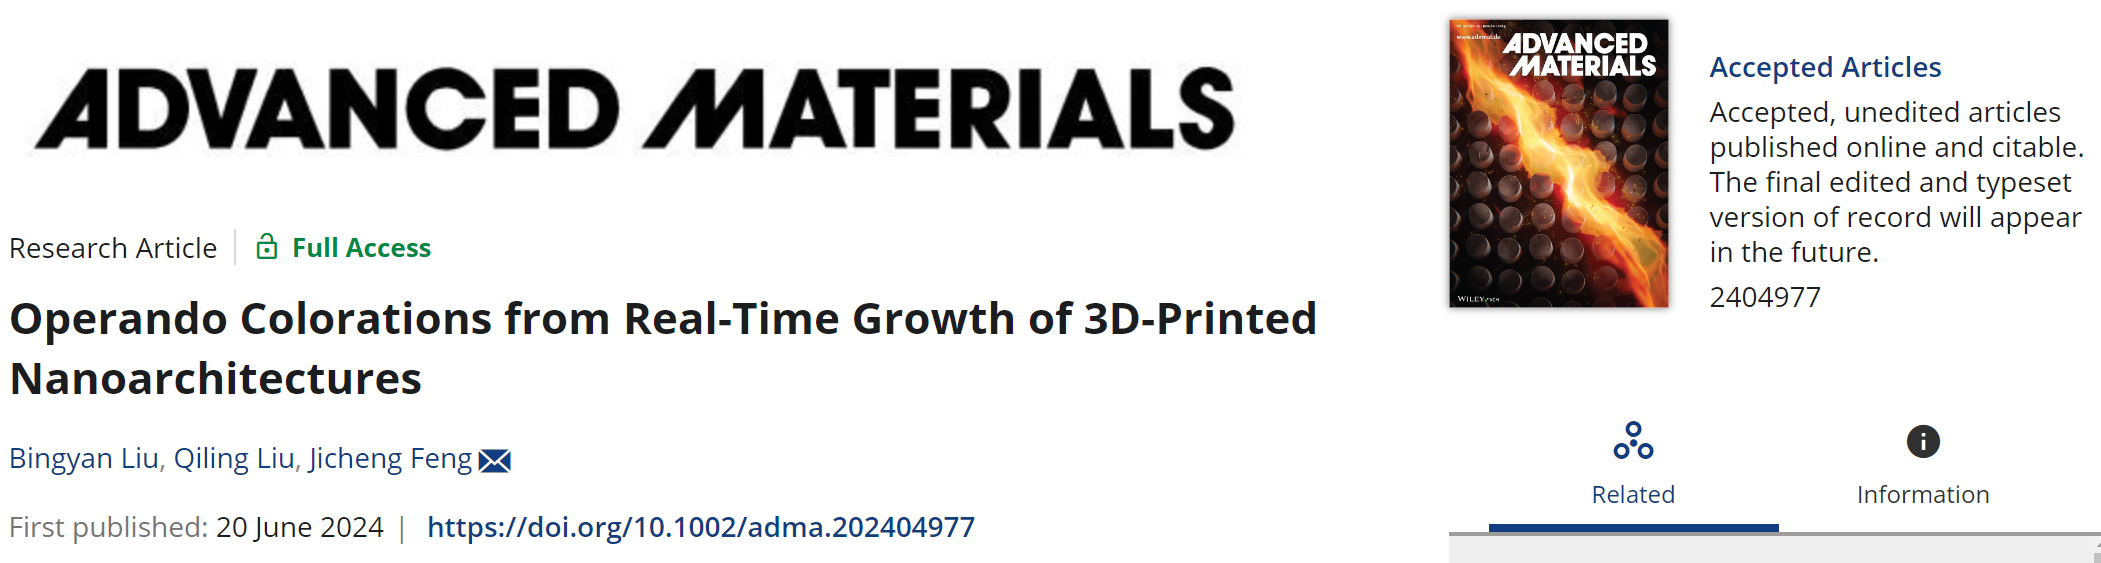 课题组博士生刘柄言的论文“Operando colorations from Real-Time Growth of 3D-Printed Nanoarchitectures”在ADVANCED MATERIALS发表